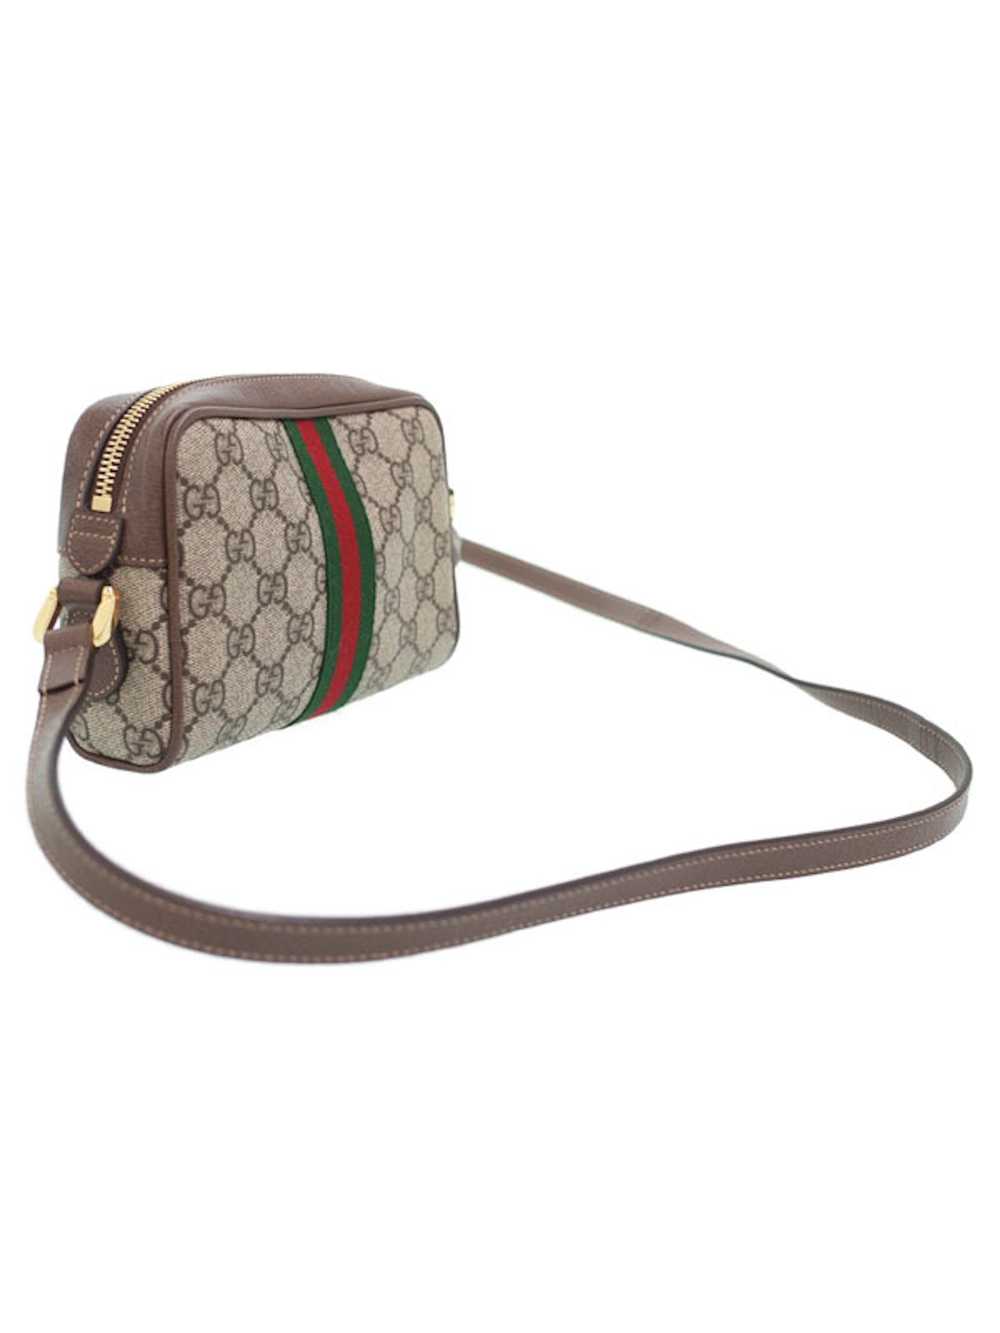 Gucci Gucci Ophidia GG Supreme Mini Shoulder Bag - image 2